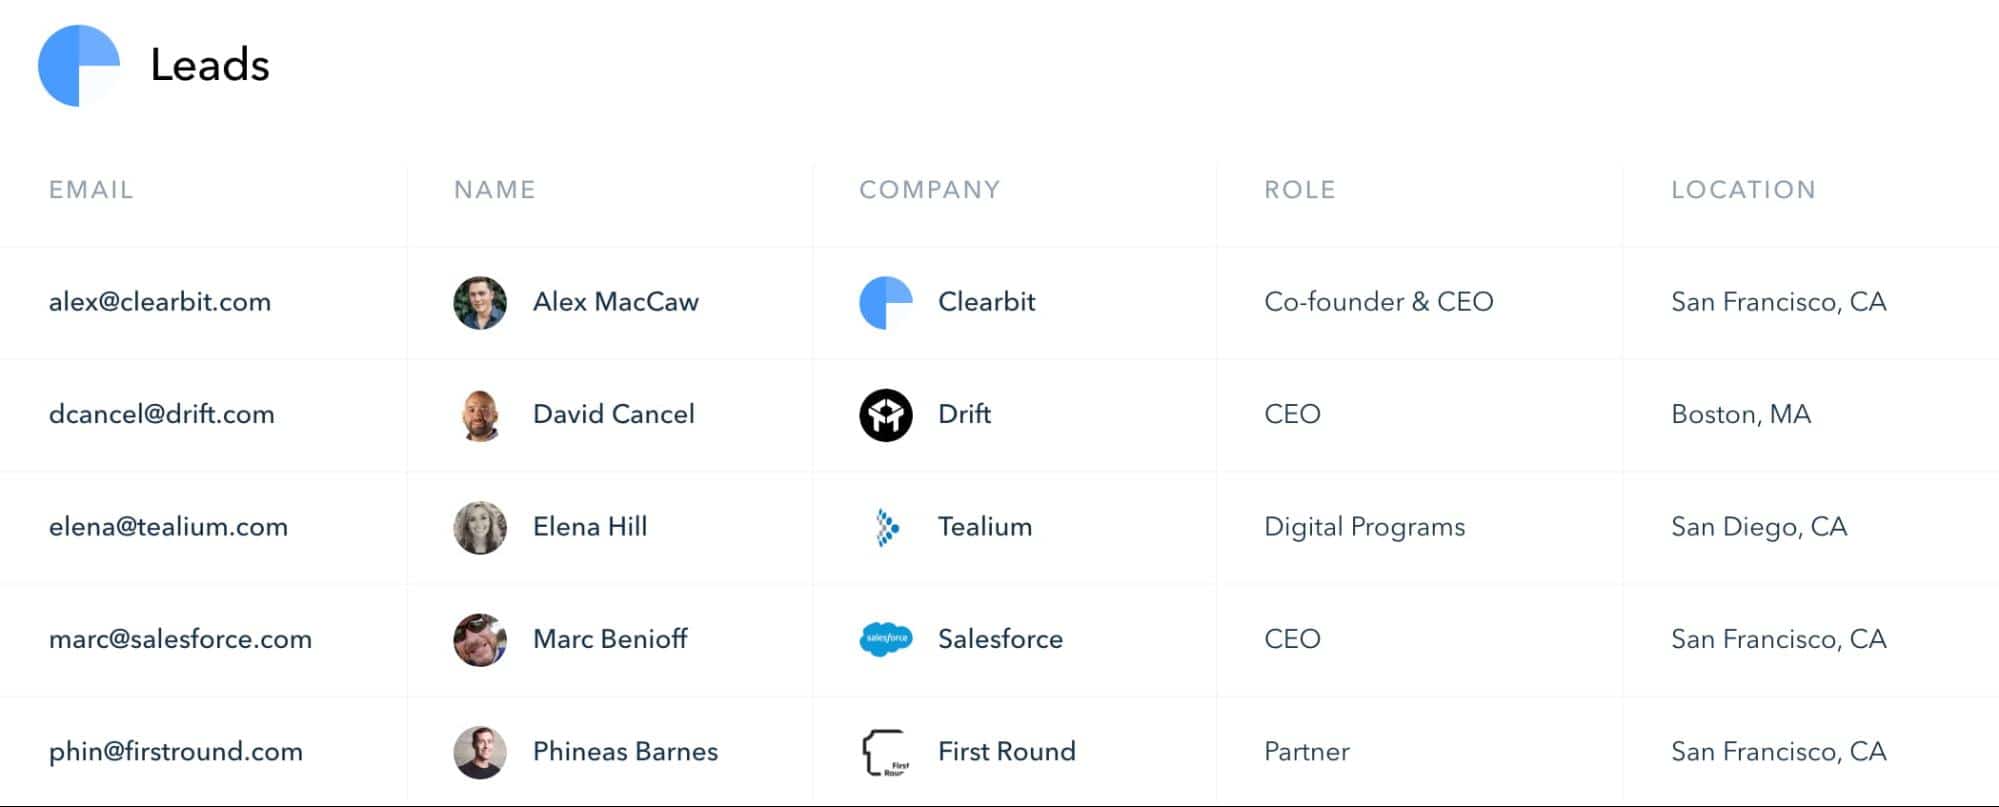 Sales engagement platform, Clearbit